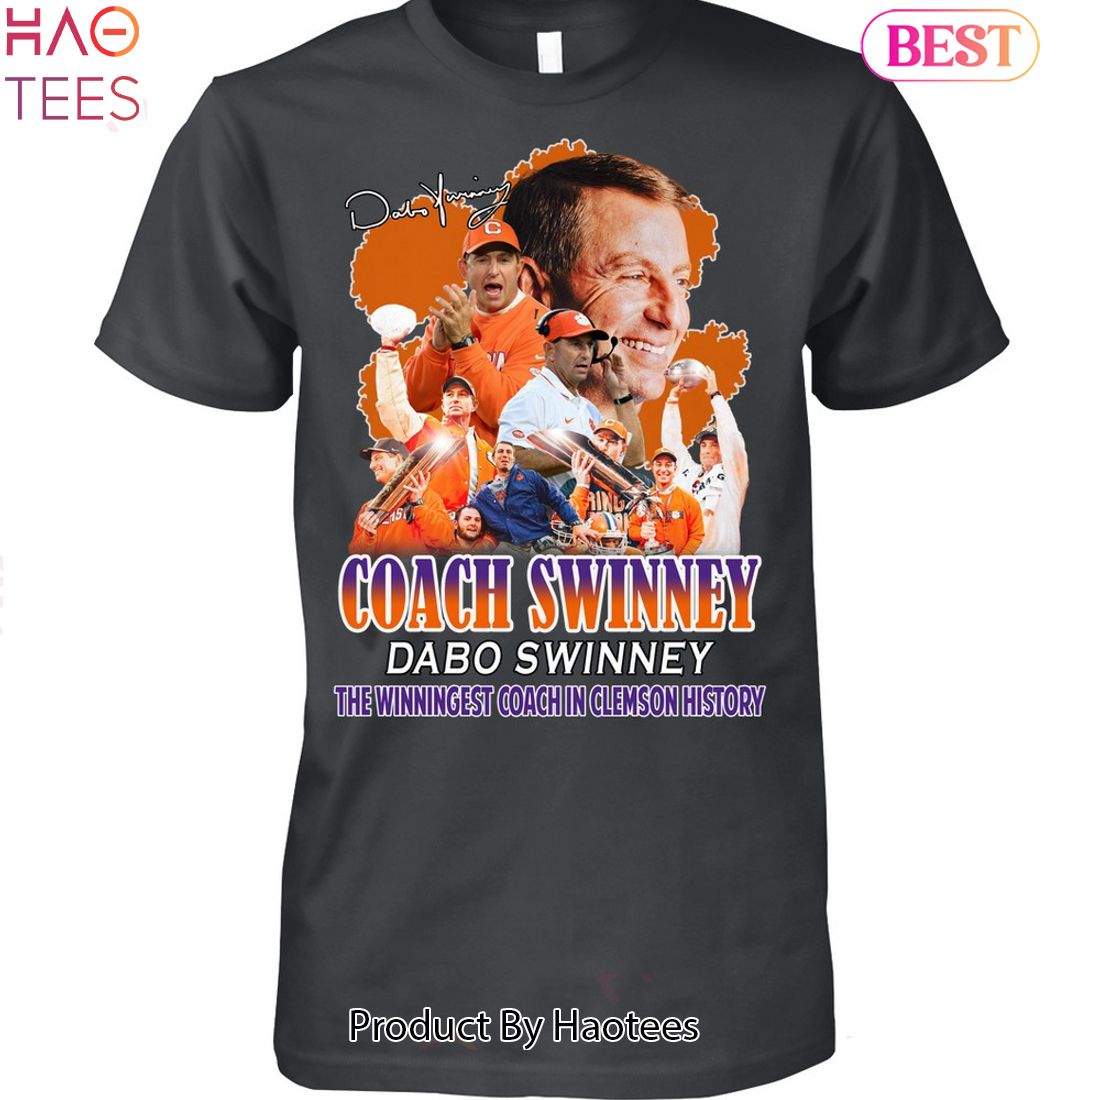 NEW Coach Swinney Dabo Swinney Unisex T-Shirt